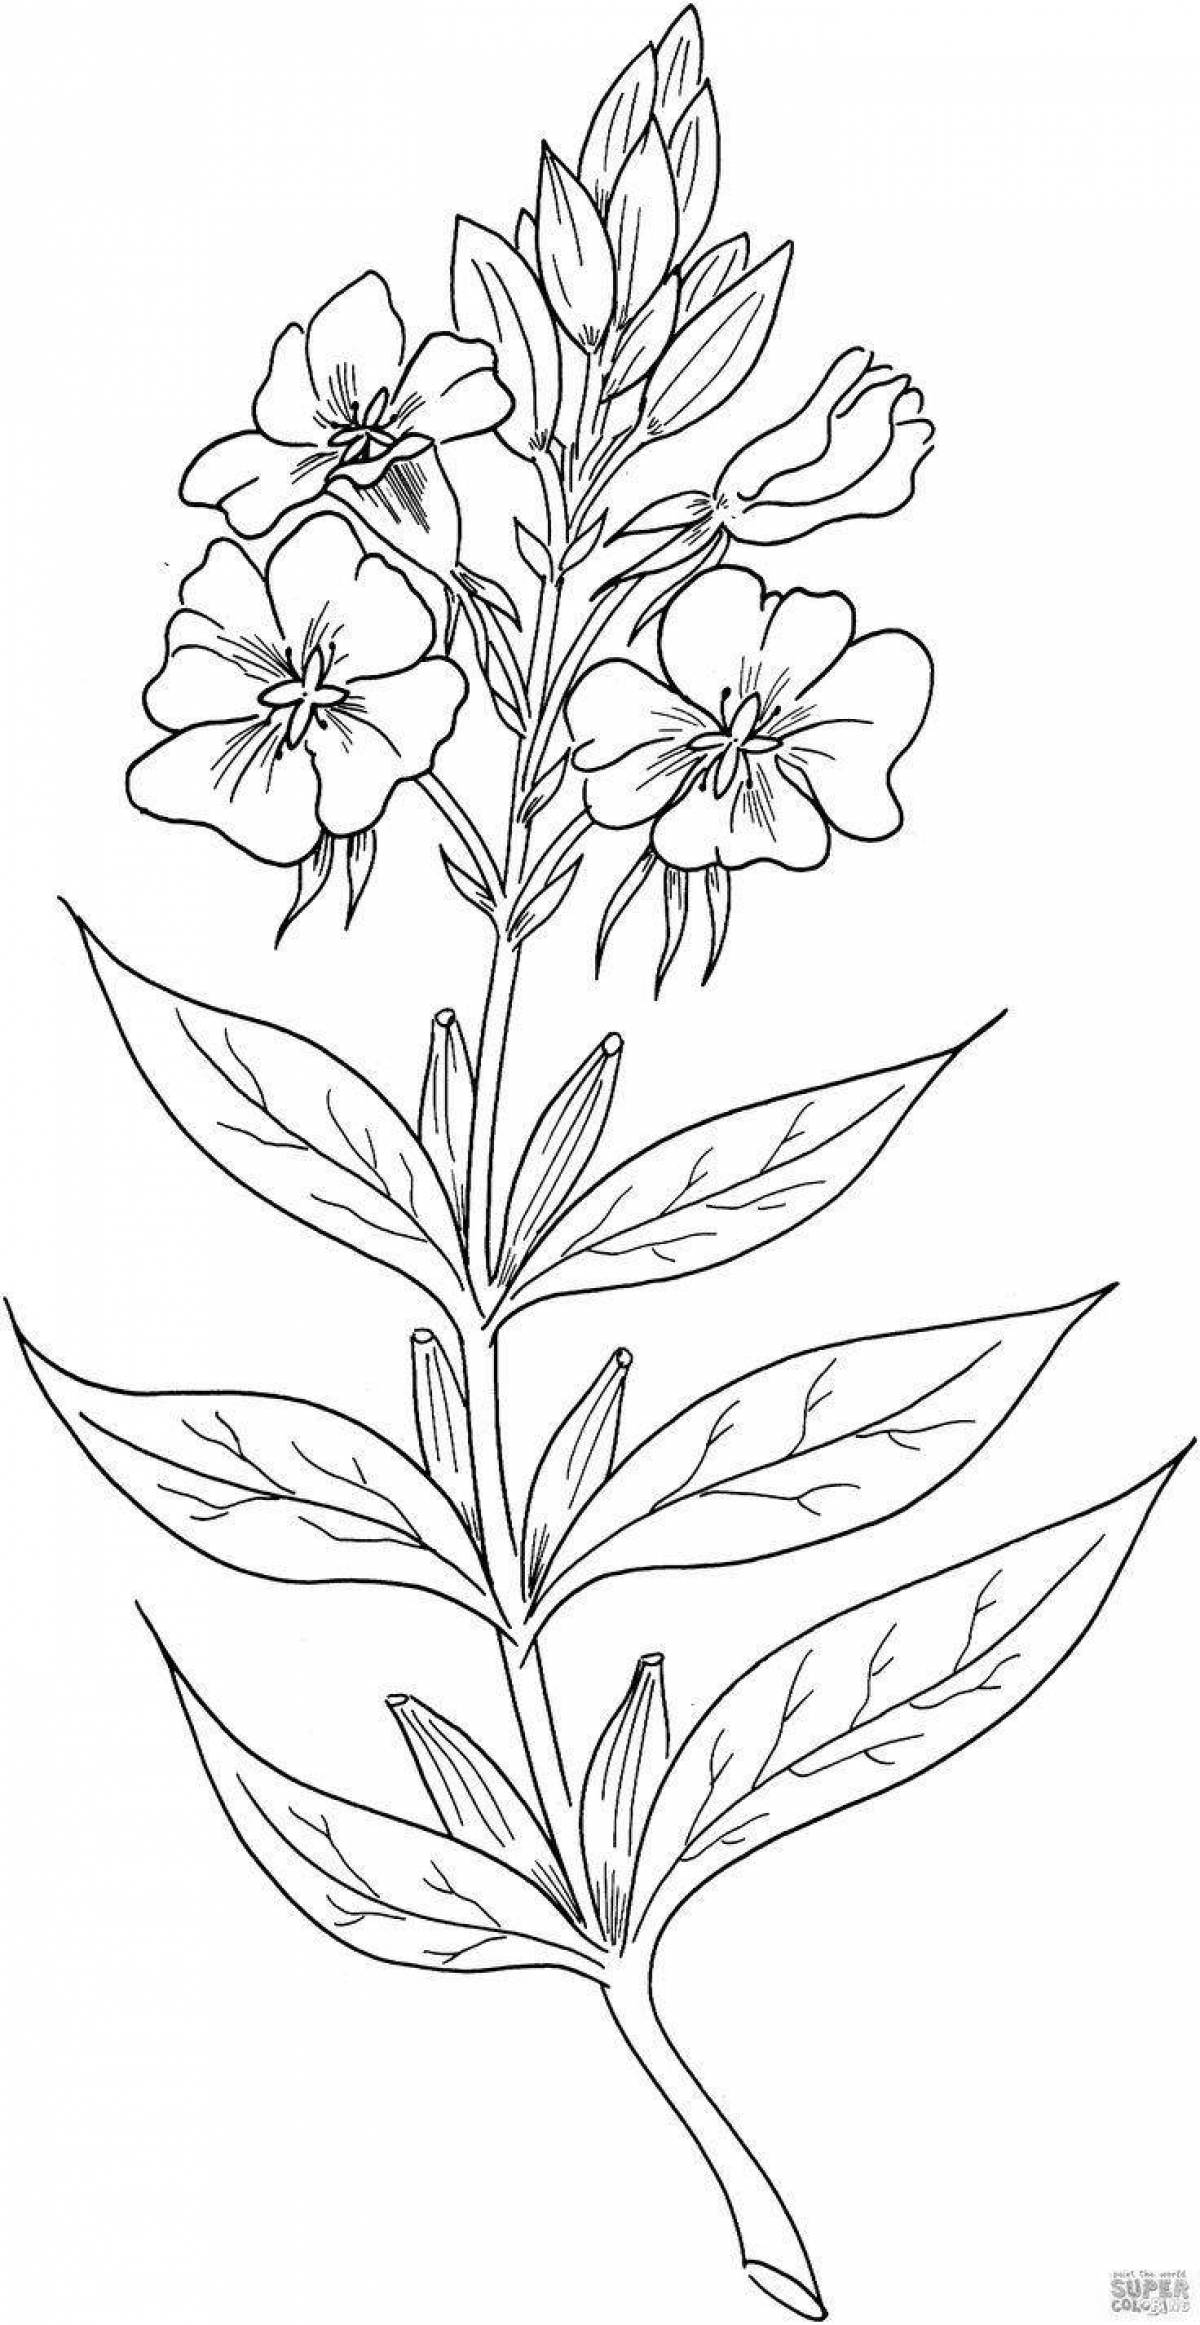 Rampant primrose coloring corydalis